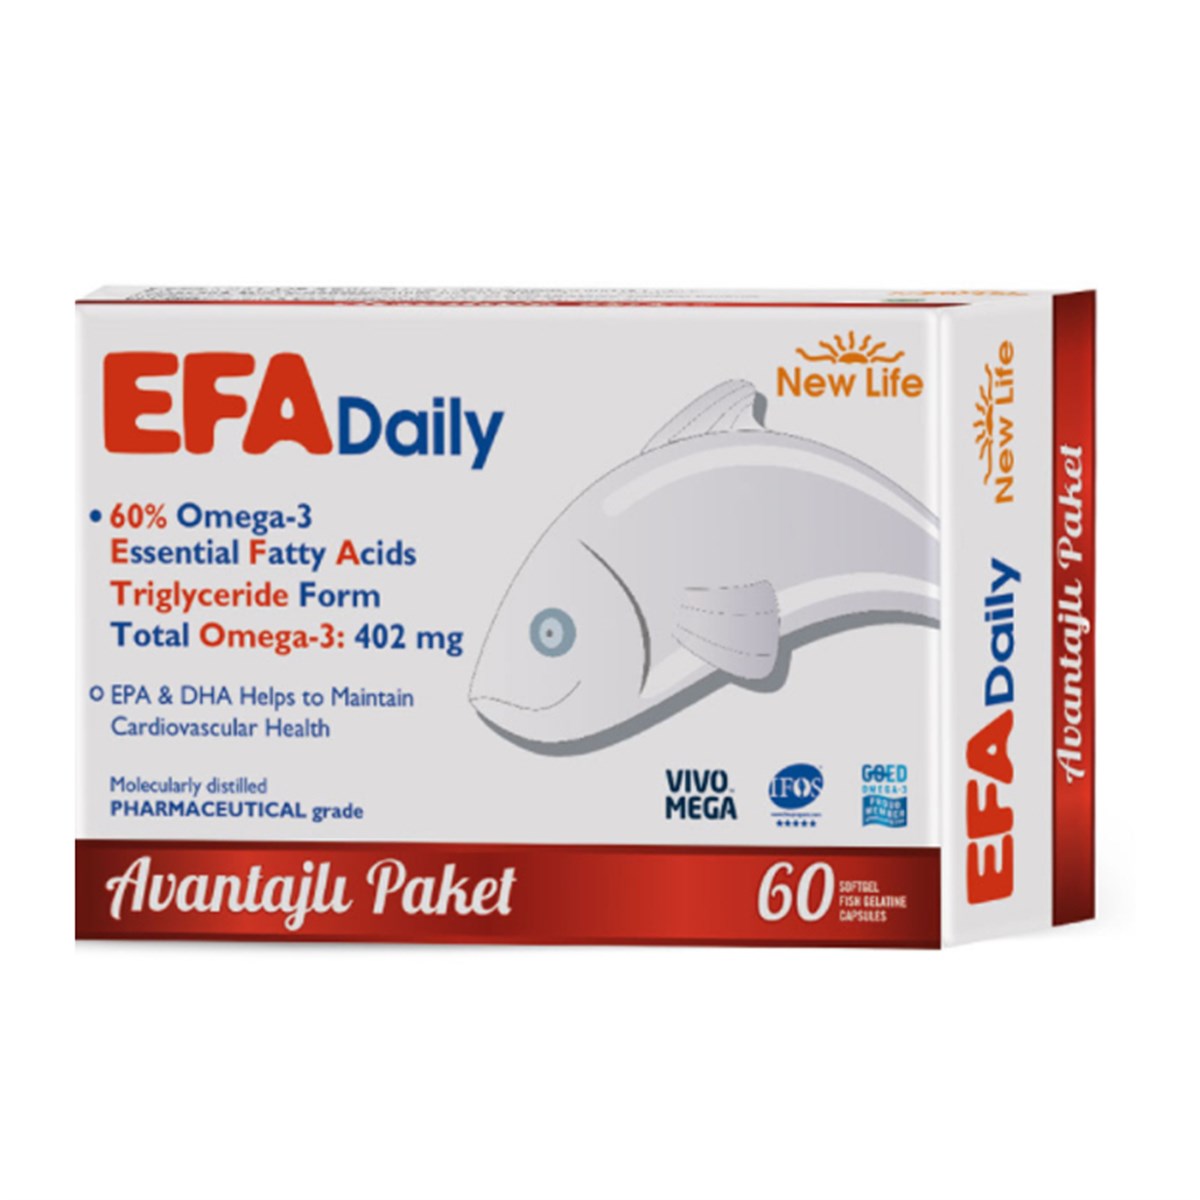 NEWLIFE Efa Daily Avantajlı Paket 60 Kapsül | Farma Ucuz